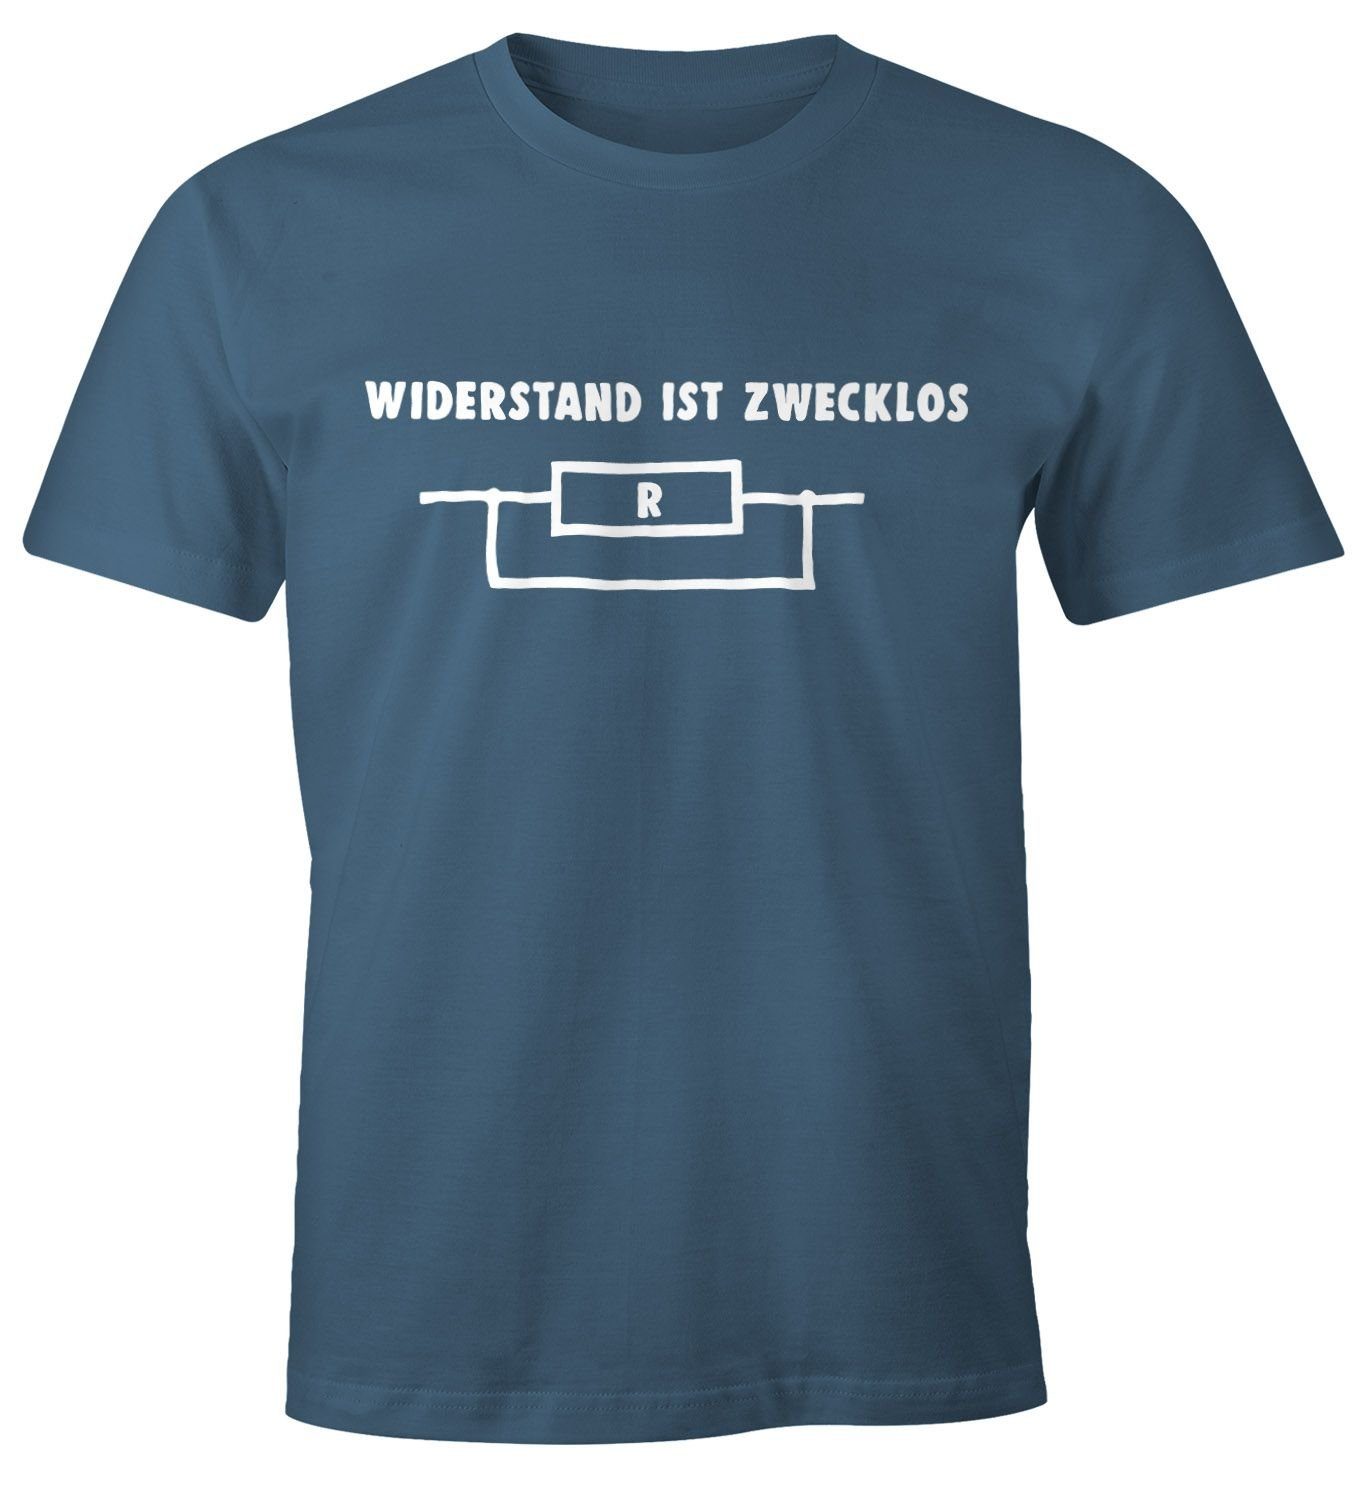 MoonWorks Print-Shirt Moonworks® ist Shirt zwecklos Herren mit T-Shirt Print blau Widerstand